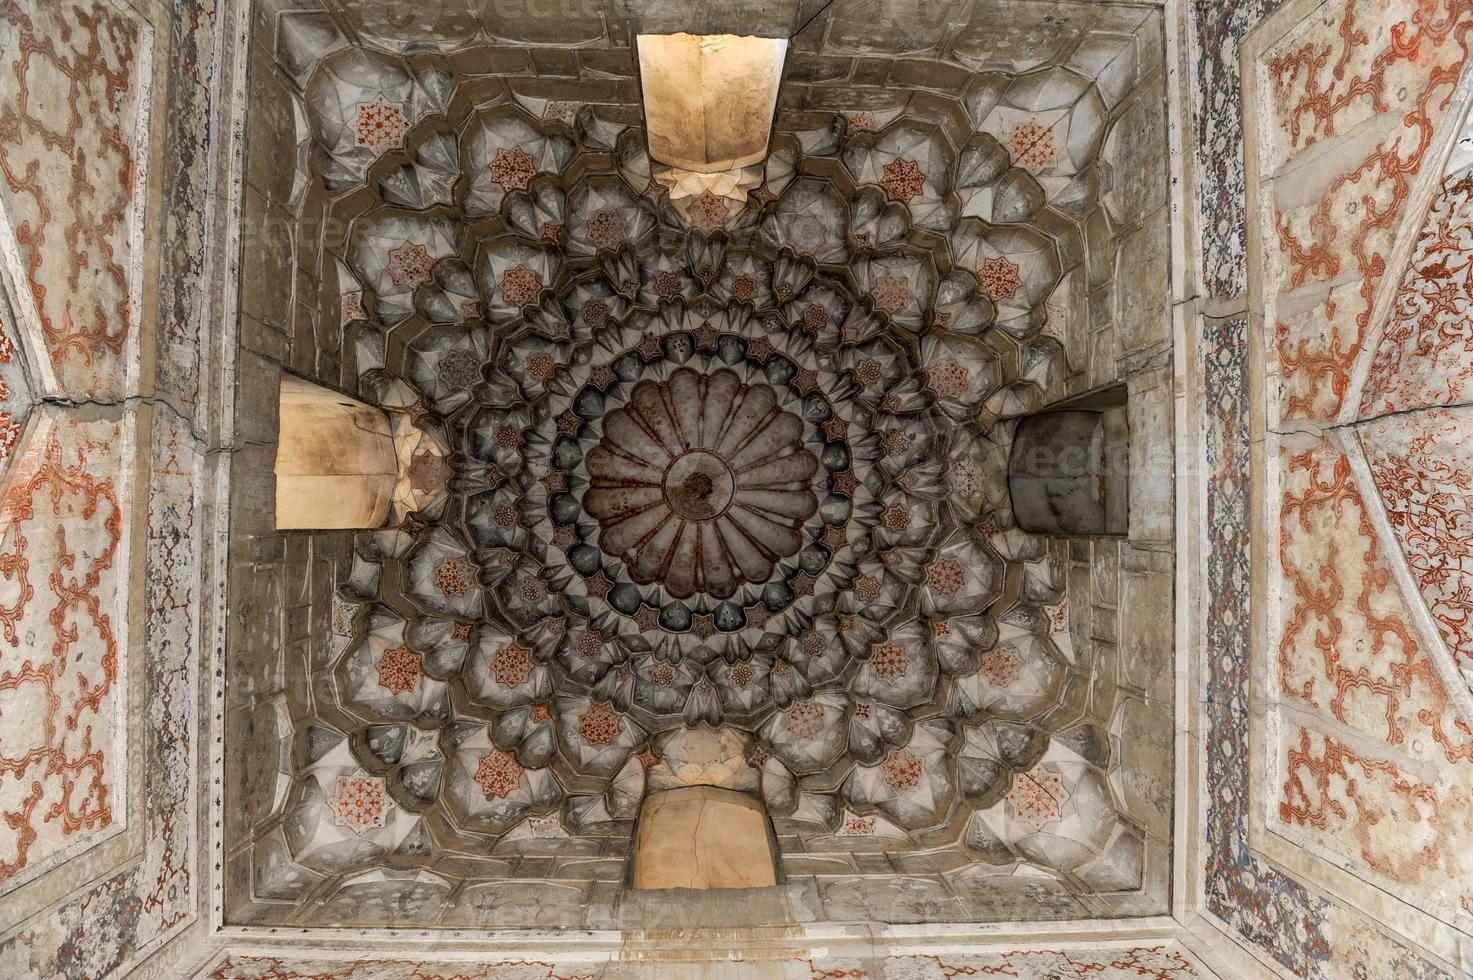 Elemente der antiken Architektur Zentralasiens. Decke in Form einer Kuppel in einem traditionellen antiken asiatischen Mosaik foto